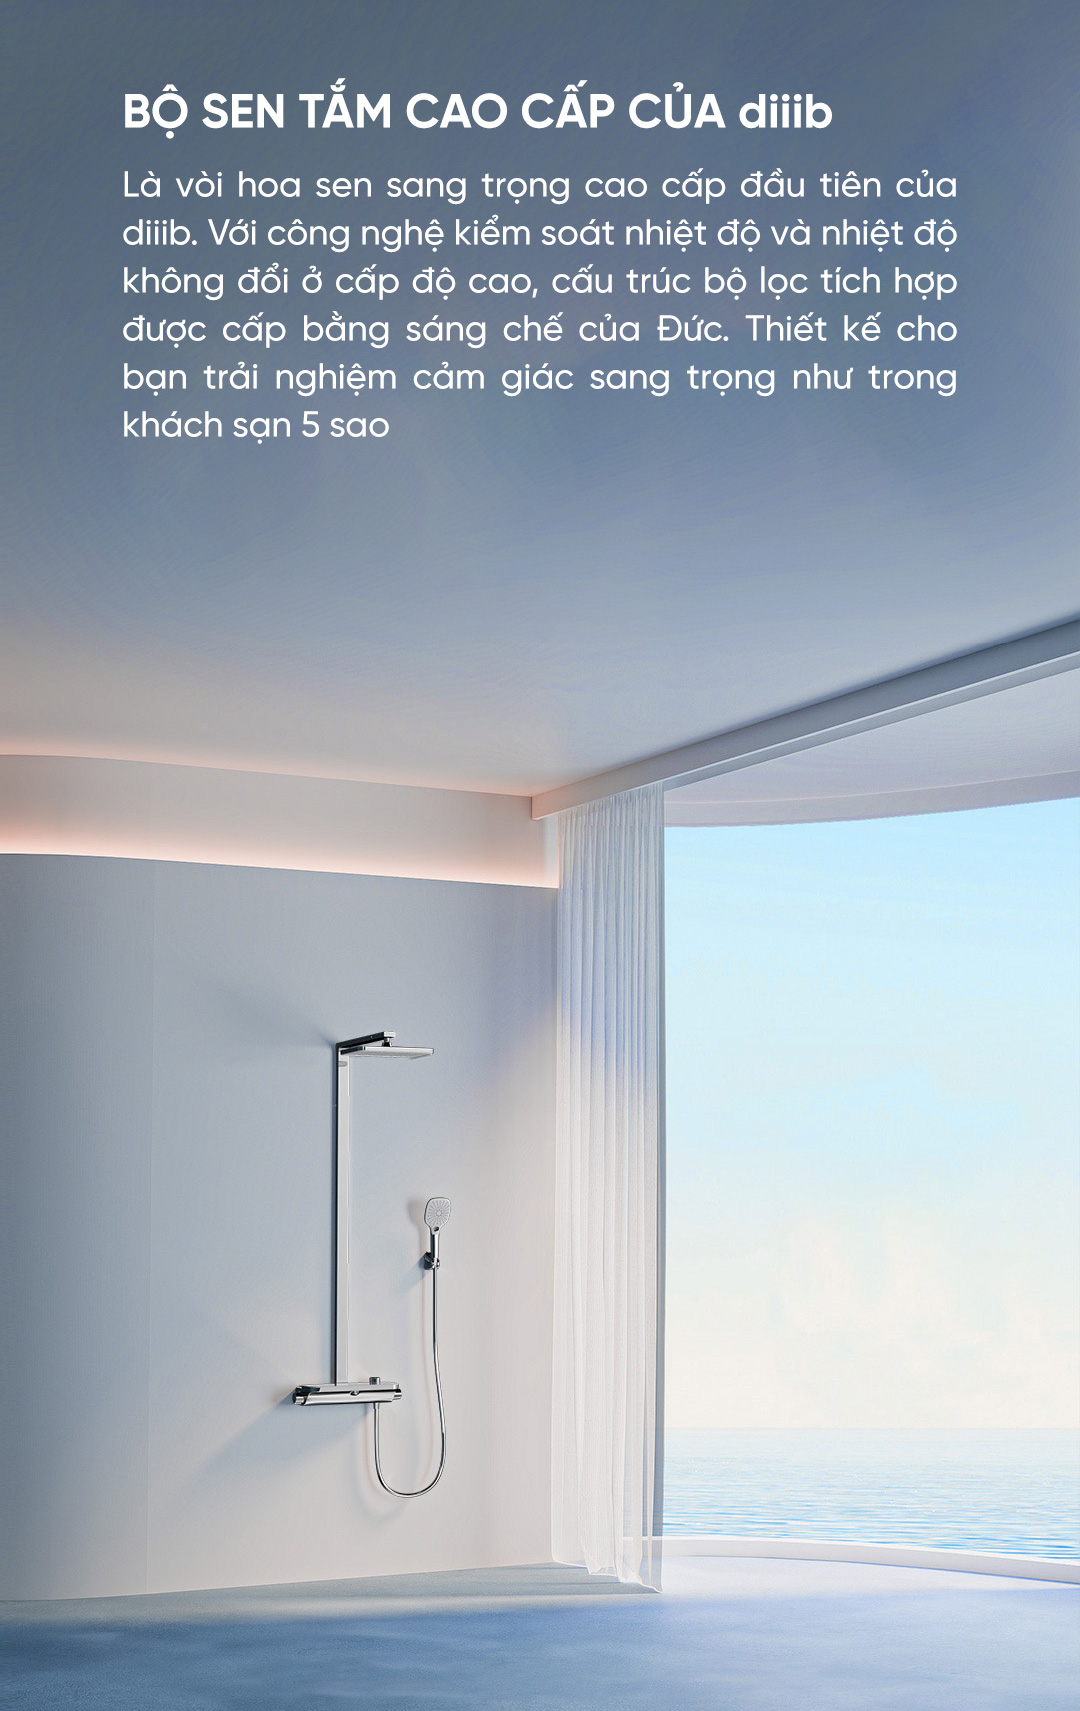 Bộ cây sen cao cấp Diiib Xiaomi chính hãng là vòi hoa sen sang trọng cao cấp đầu tiên của Diiib. Với công nghệ kiểm soát nhiệt độ và nhiệt độ không đổi ở cấp độ cao